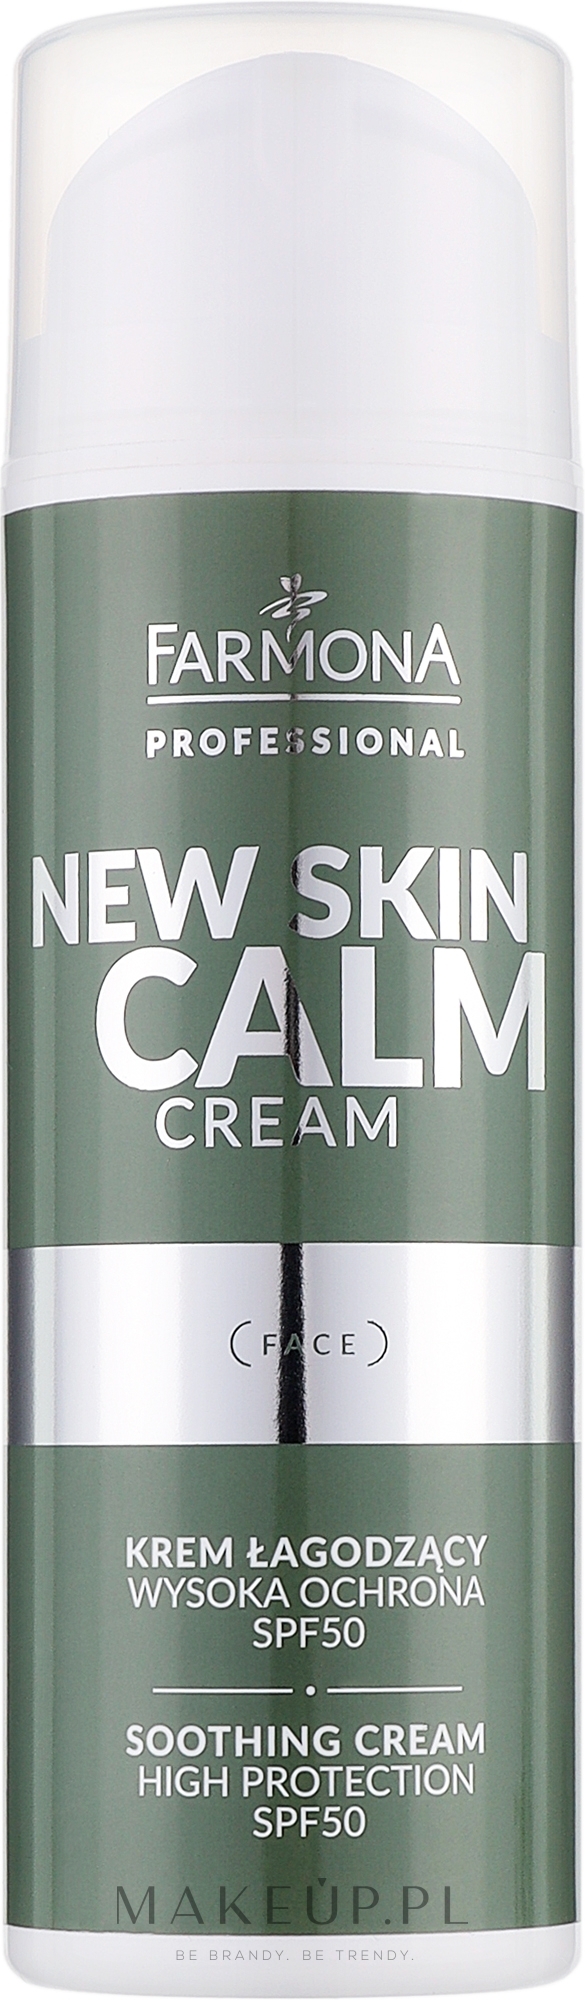 Łagodzący krem do twarzy z wysoką ochroną SPF 50 - Farmona Professional New Skin Calm Cream Face Soothing Cream High Protection SPF 50 — Zdjęcie 150 ml